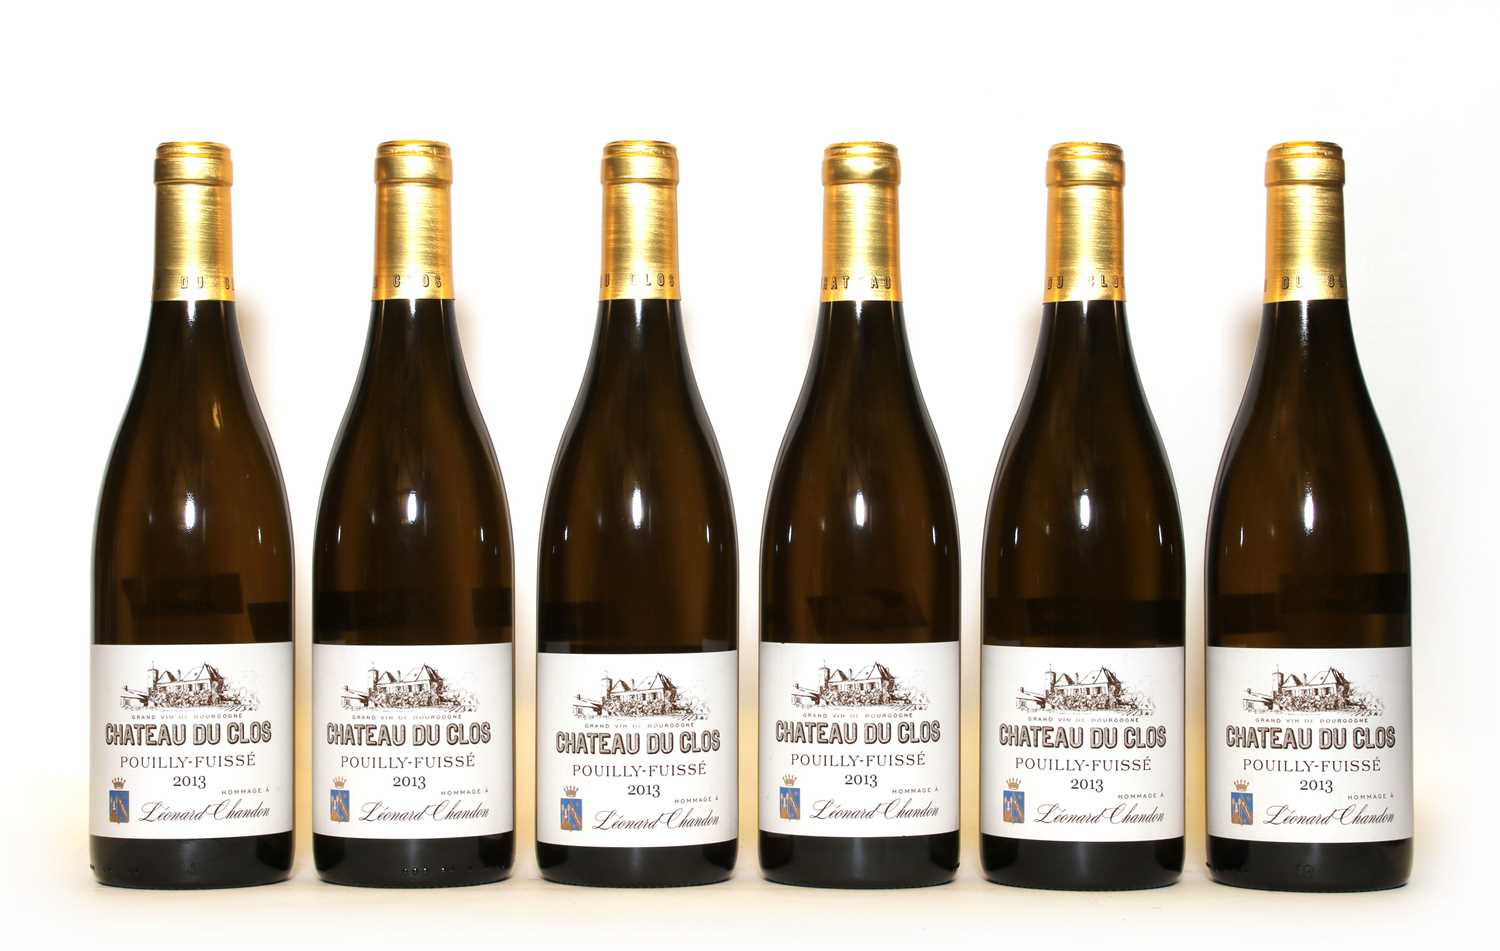 Lot 34 - Pouilly Fuisse, Chateau du Clos, Hommage a Leonard Chandon, 2013, six bottles